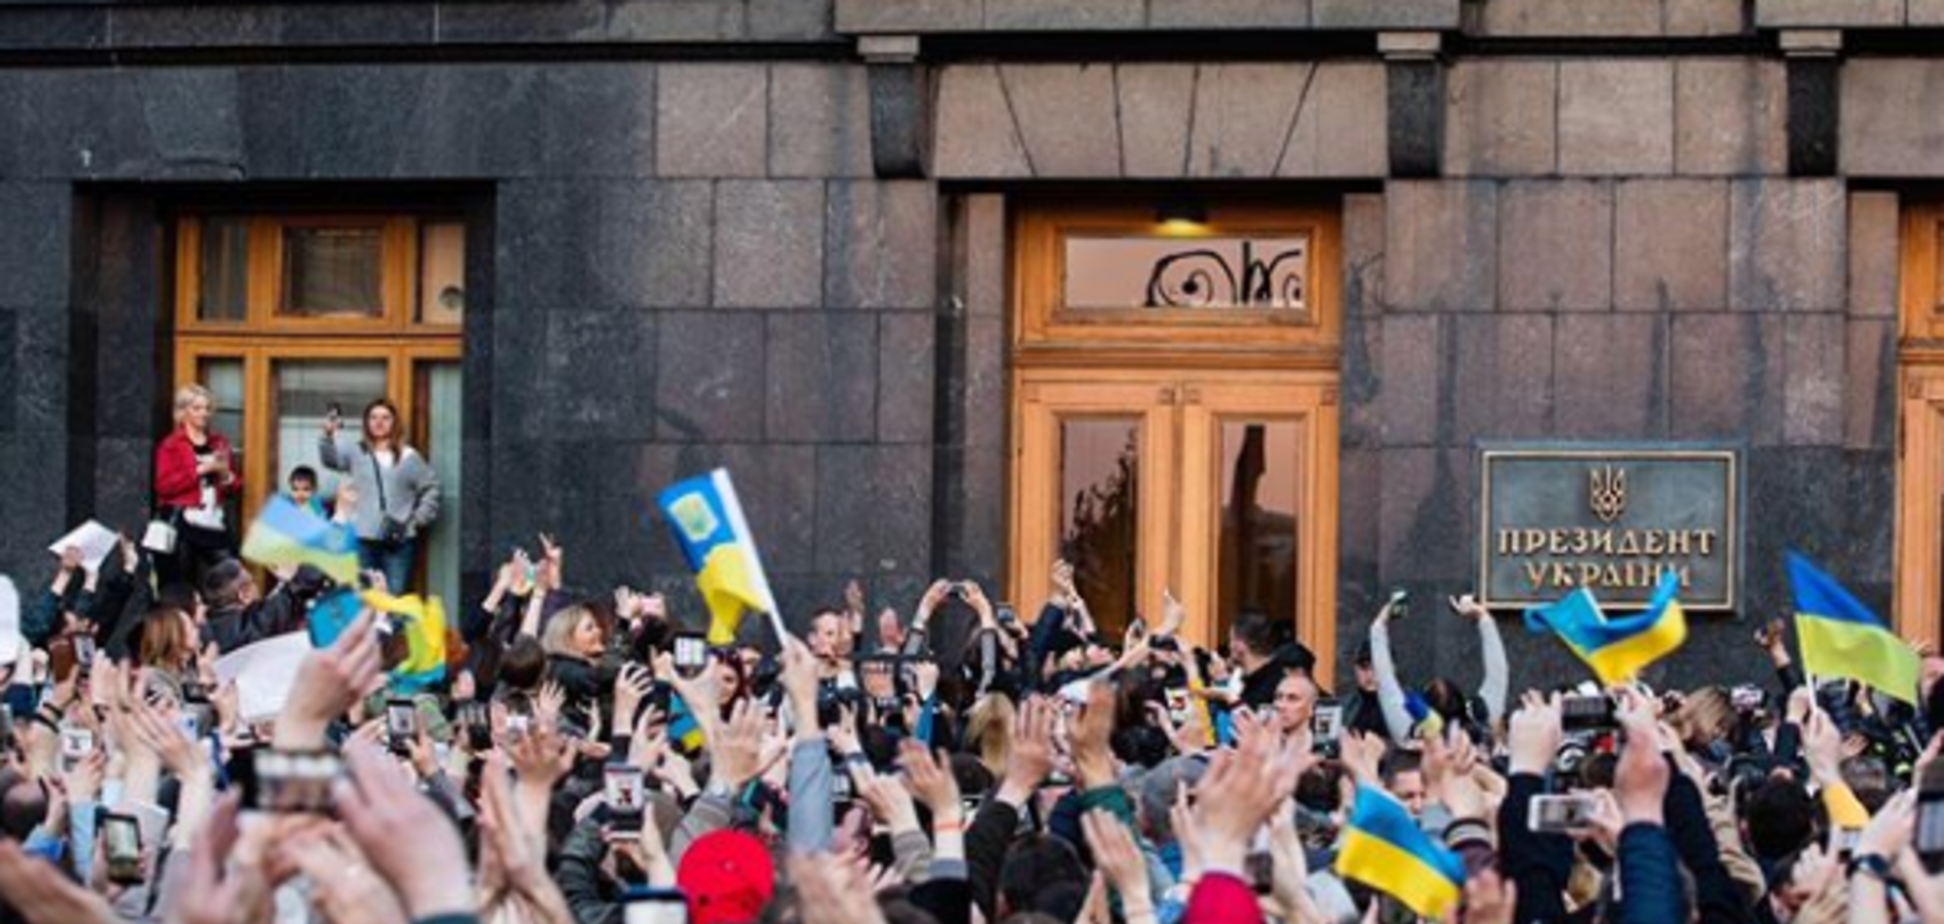 'Дякуємо!' Украинцы под АП устроили масштабный митинг-благодарность Порошенко